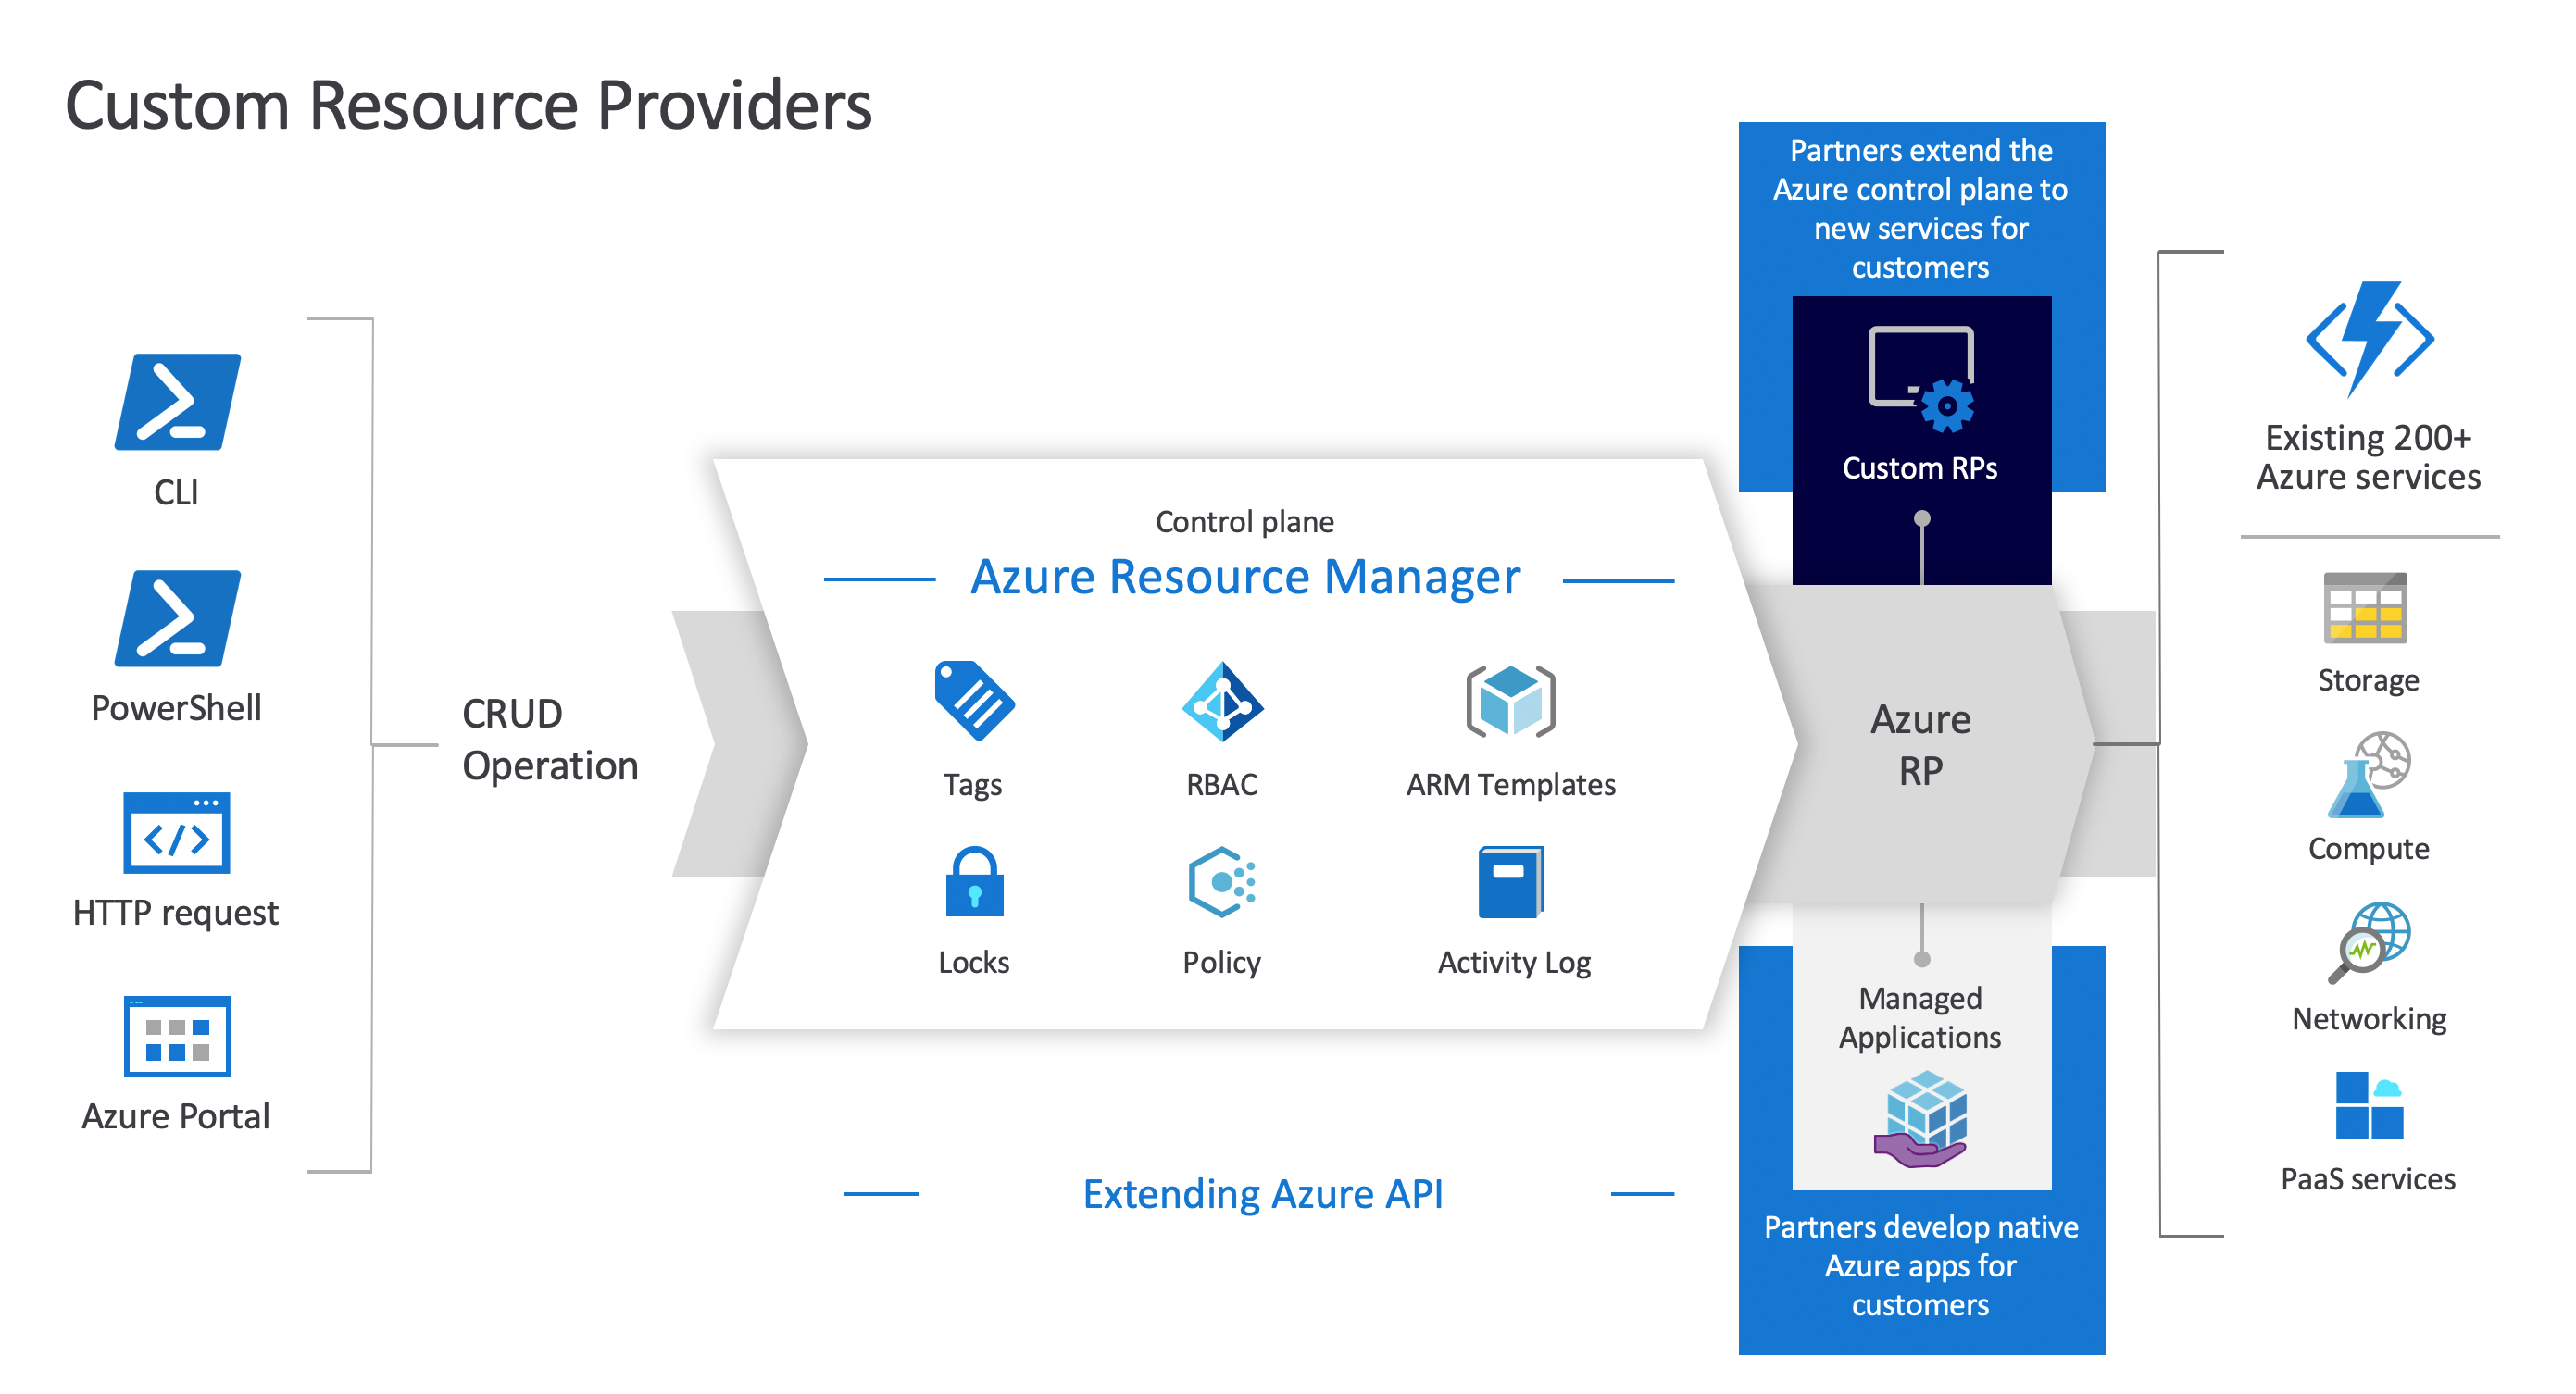 Diagrama de los proveedores de recursos personalizados de Azure, que muestra la relación entre Azure Resource Manager, los proveedores de recursos personalizados y los recursos.